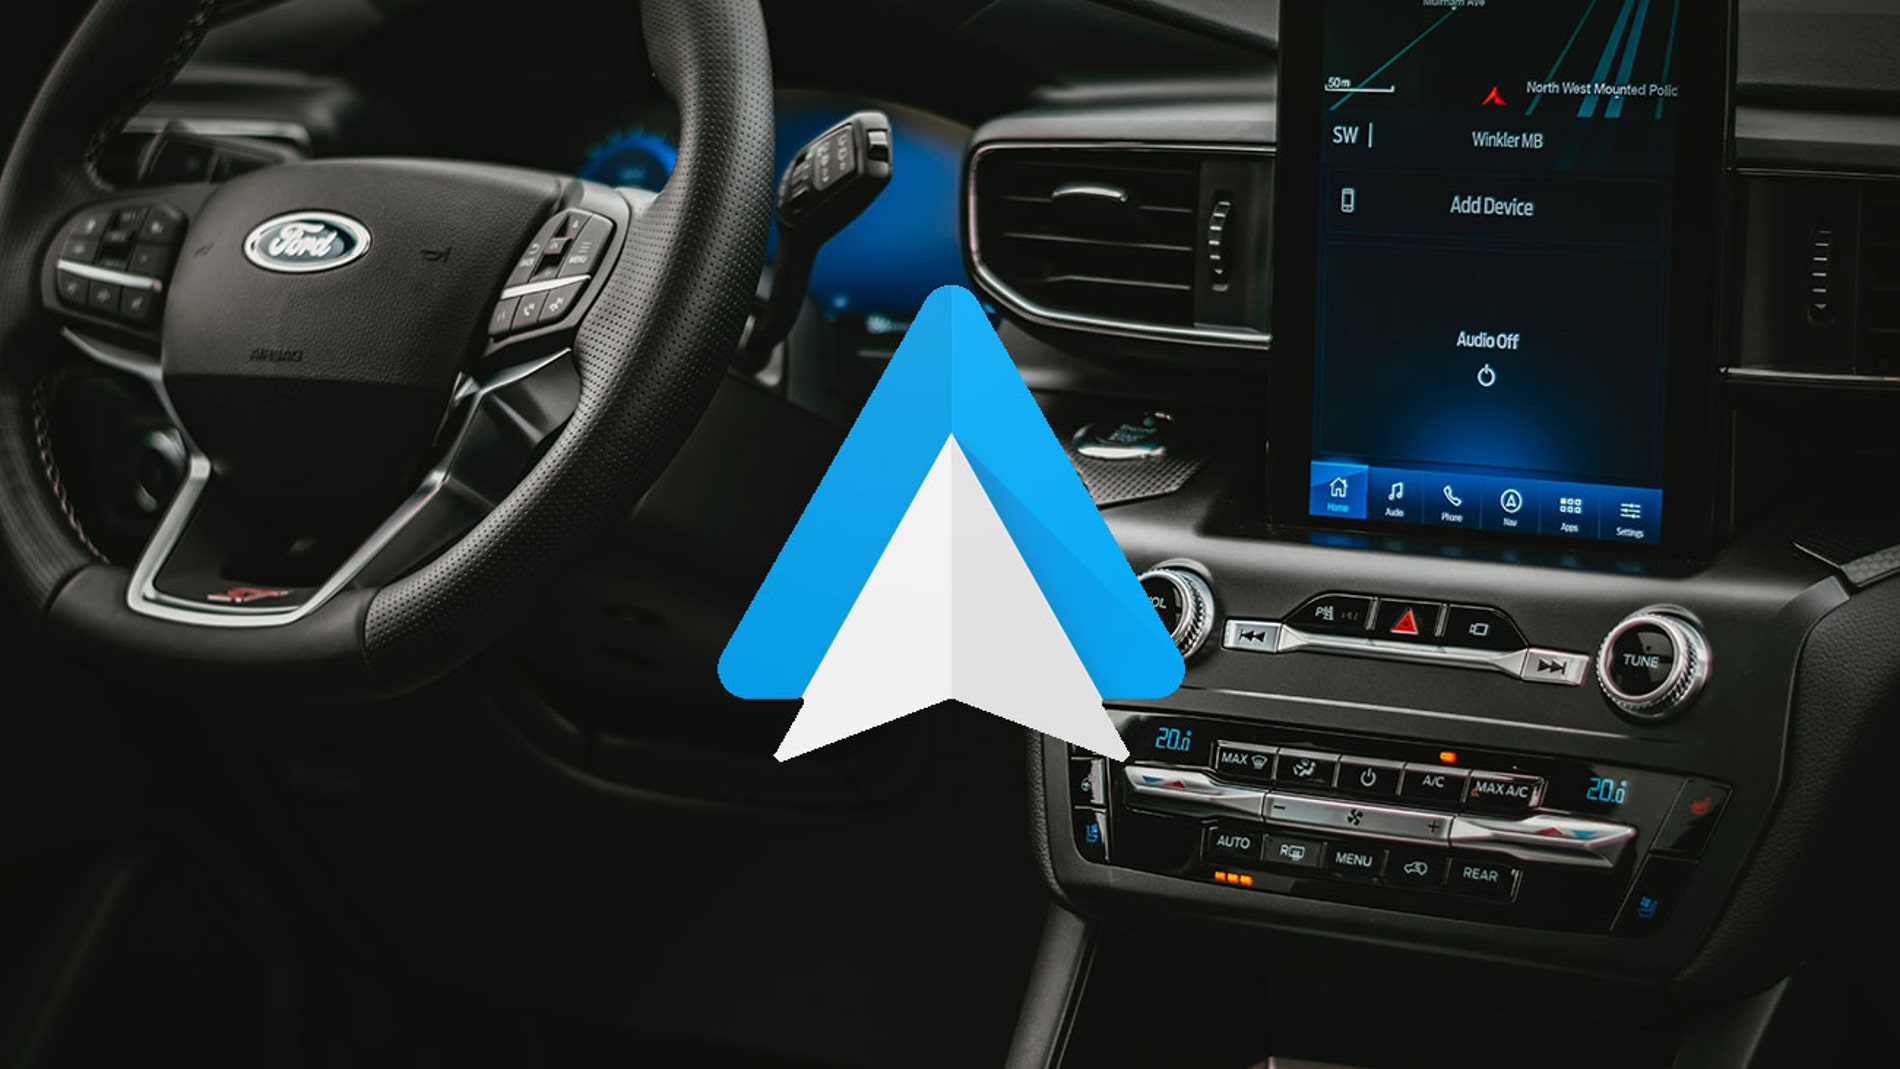 Cómo usar Android Auto inalámbrico si tu coche no es compatible